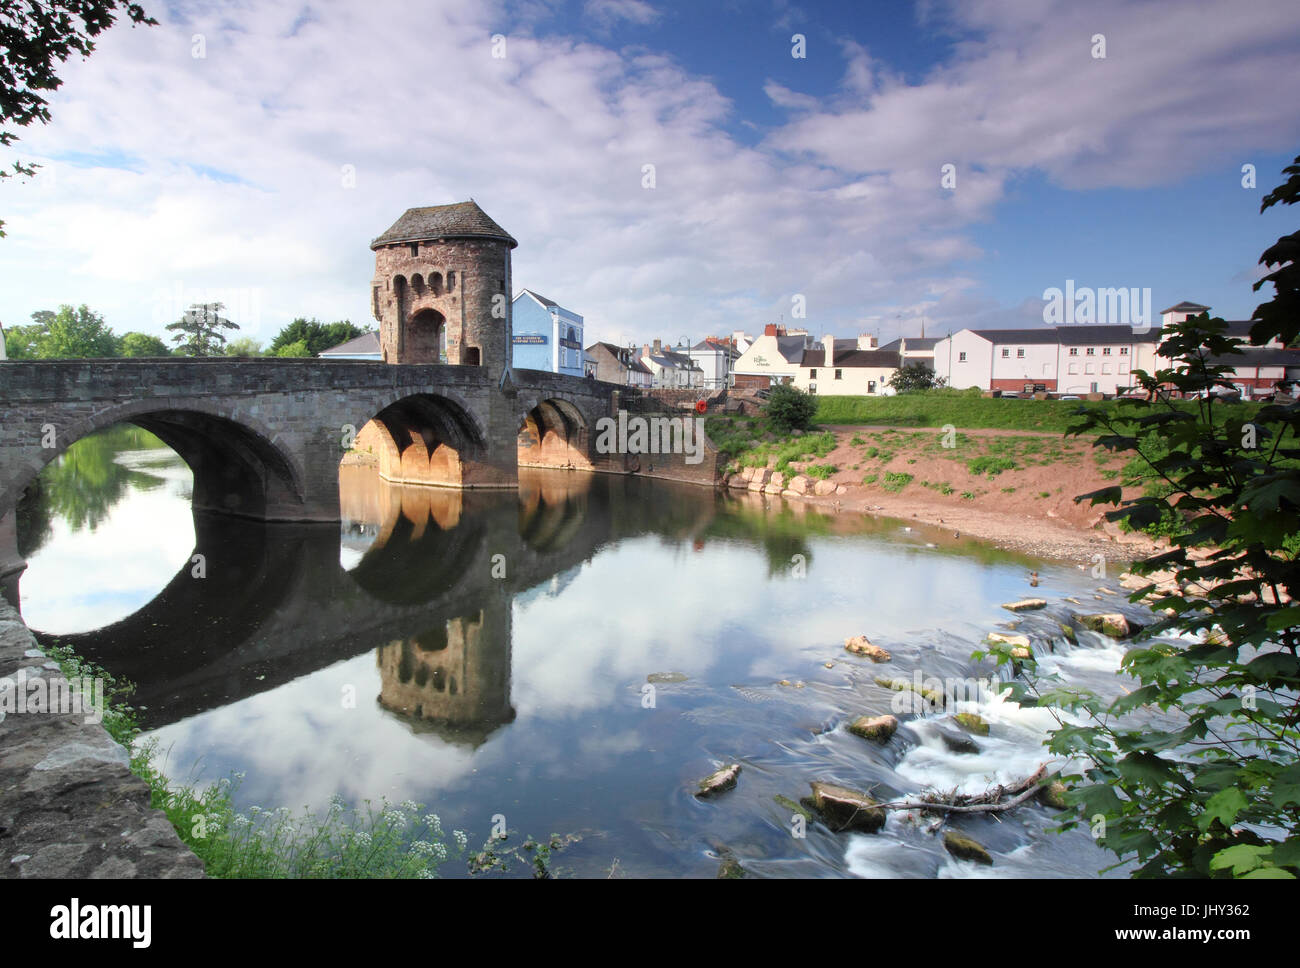 Monnow Brücke und Tor, das einzig verbliebene befestigte Flußbrücke in Großbritannien, in Monmouth, Wales, UK Stockfoto